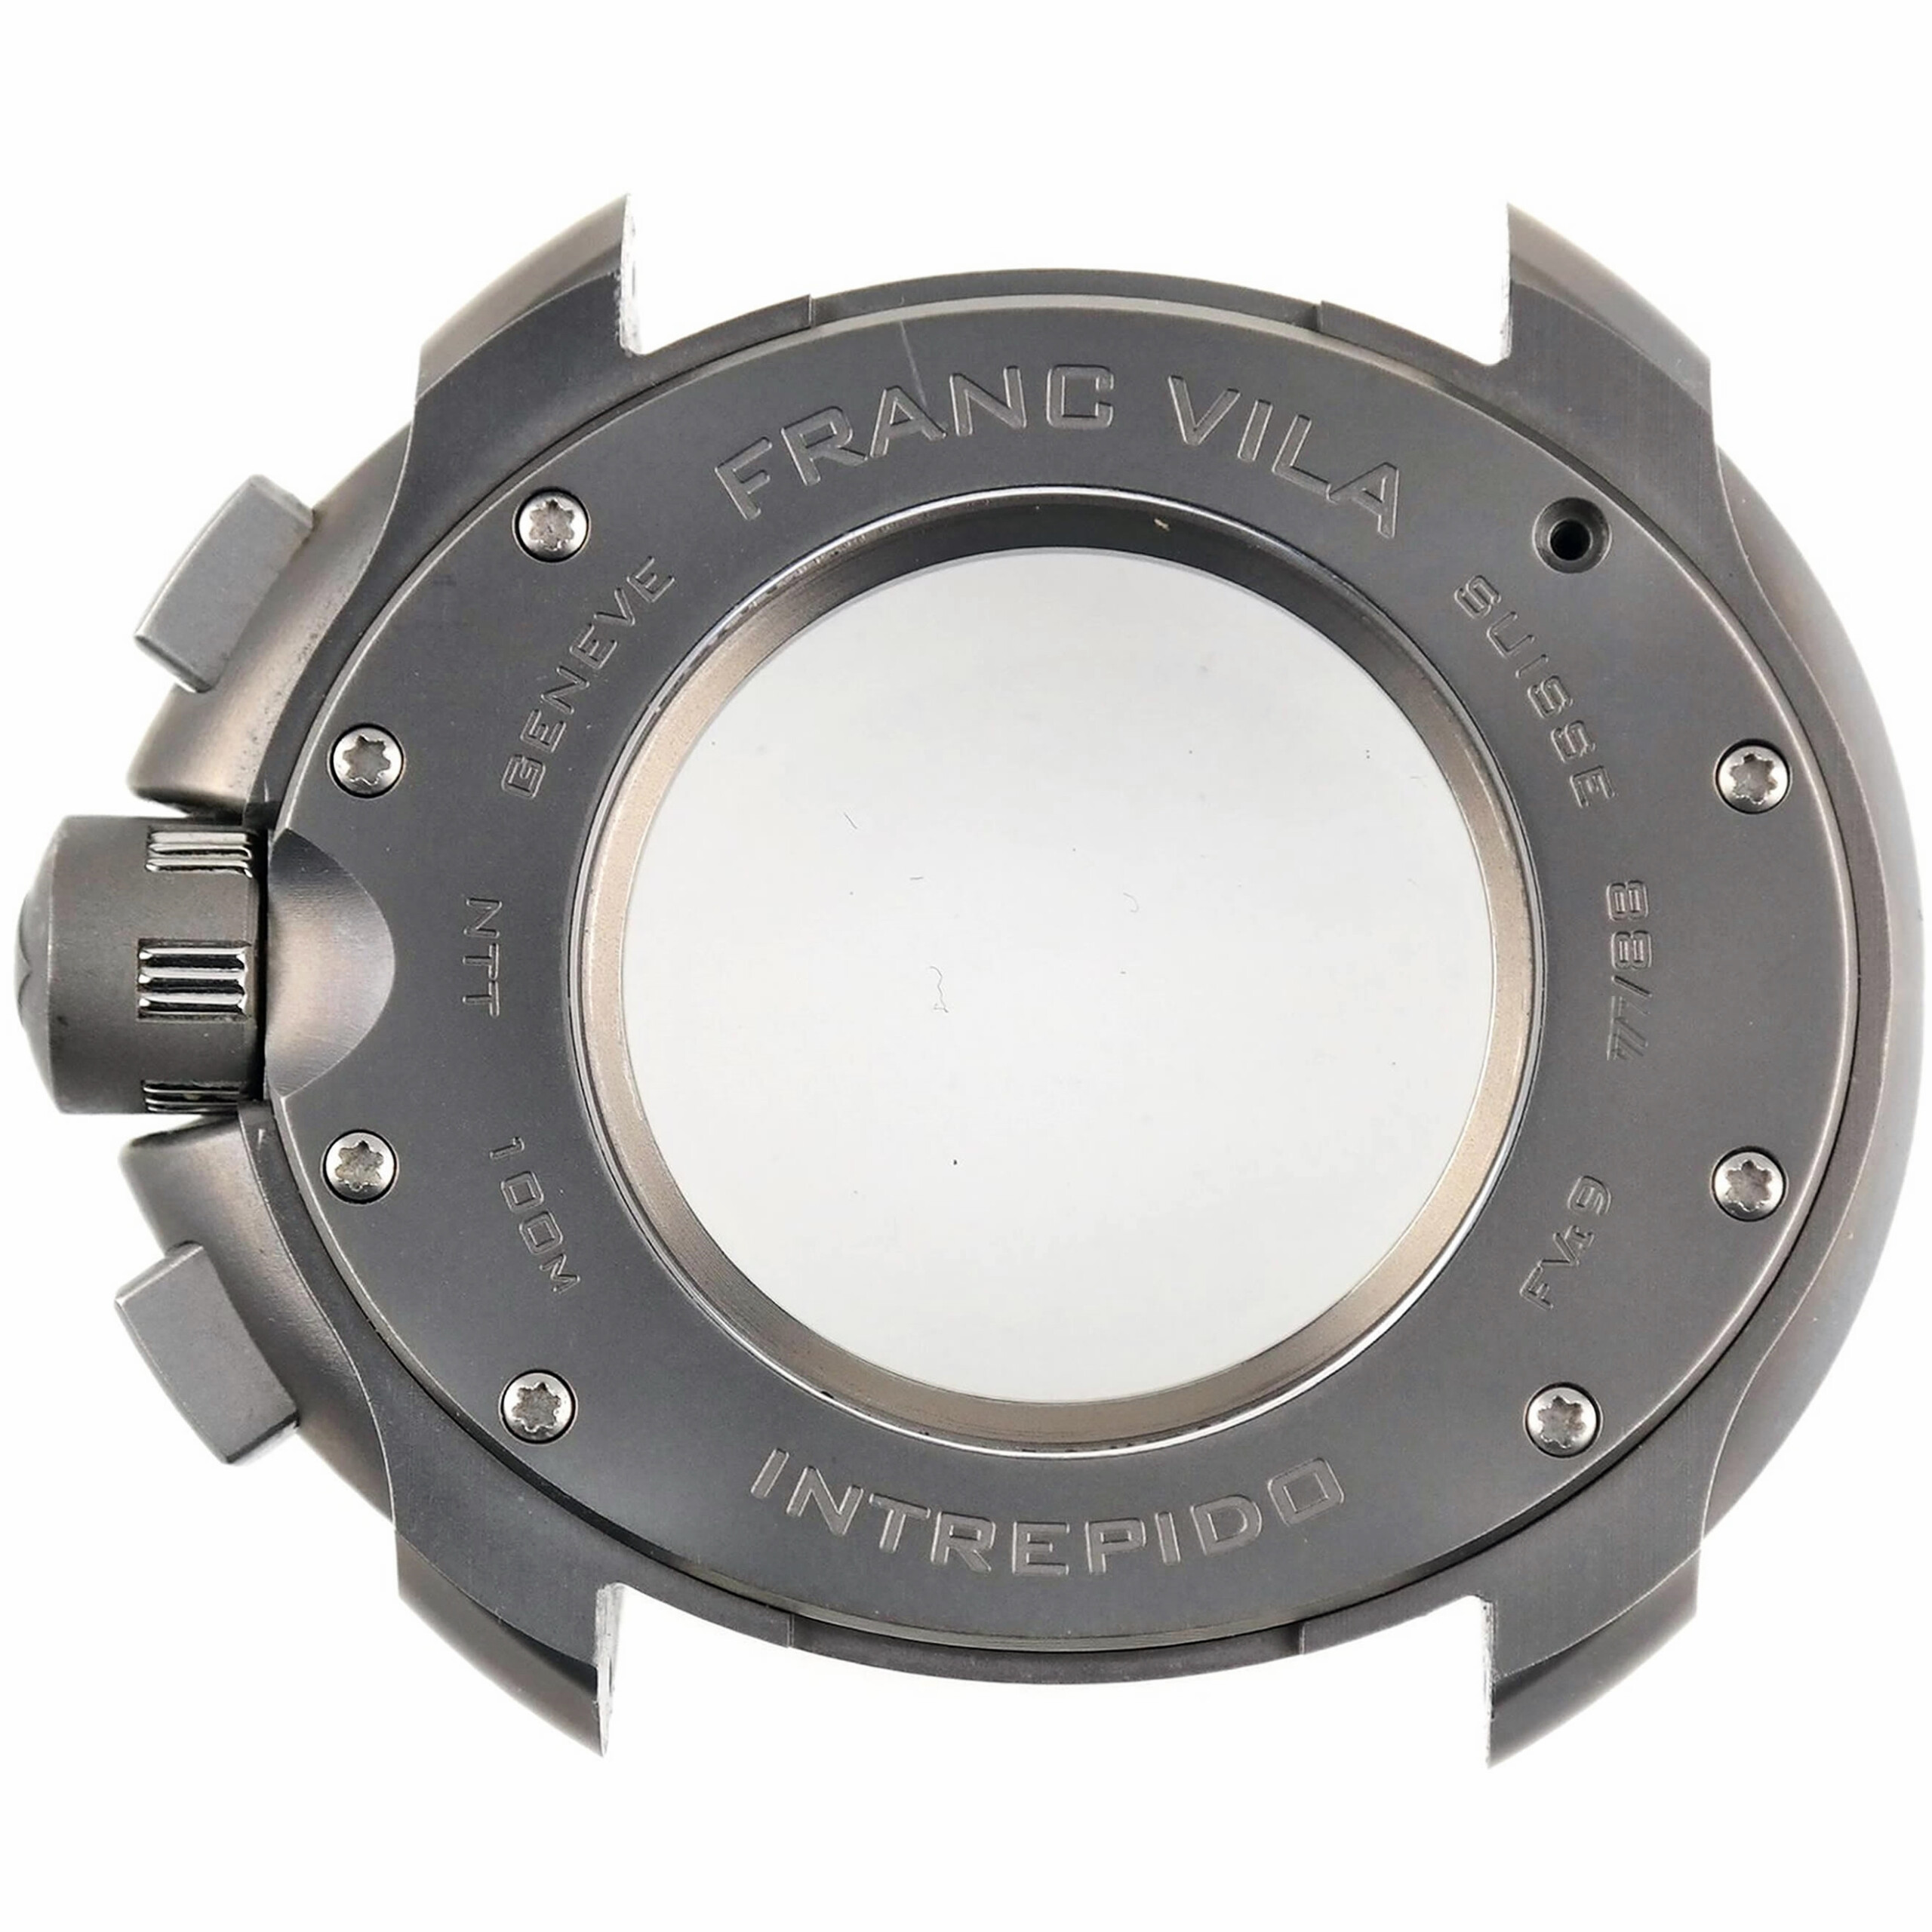 FRANC VILA - FVi 9 Chrono Intrepido SuperLigero Concept - Original Watch Case